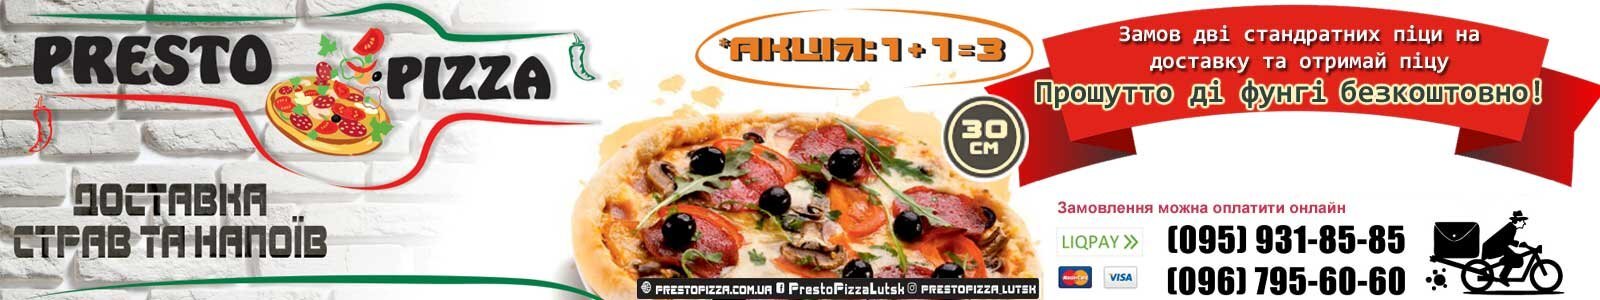 ПРАЦЮЄМО!Presto Pizza №1 Доставка піци і суші в Луцьку. З 10 до 21.45